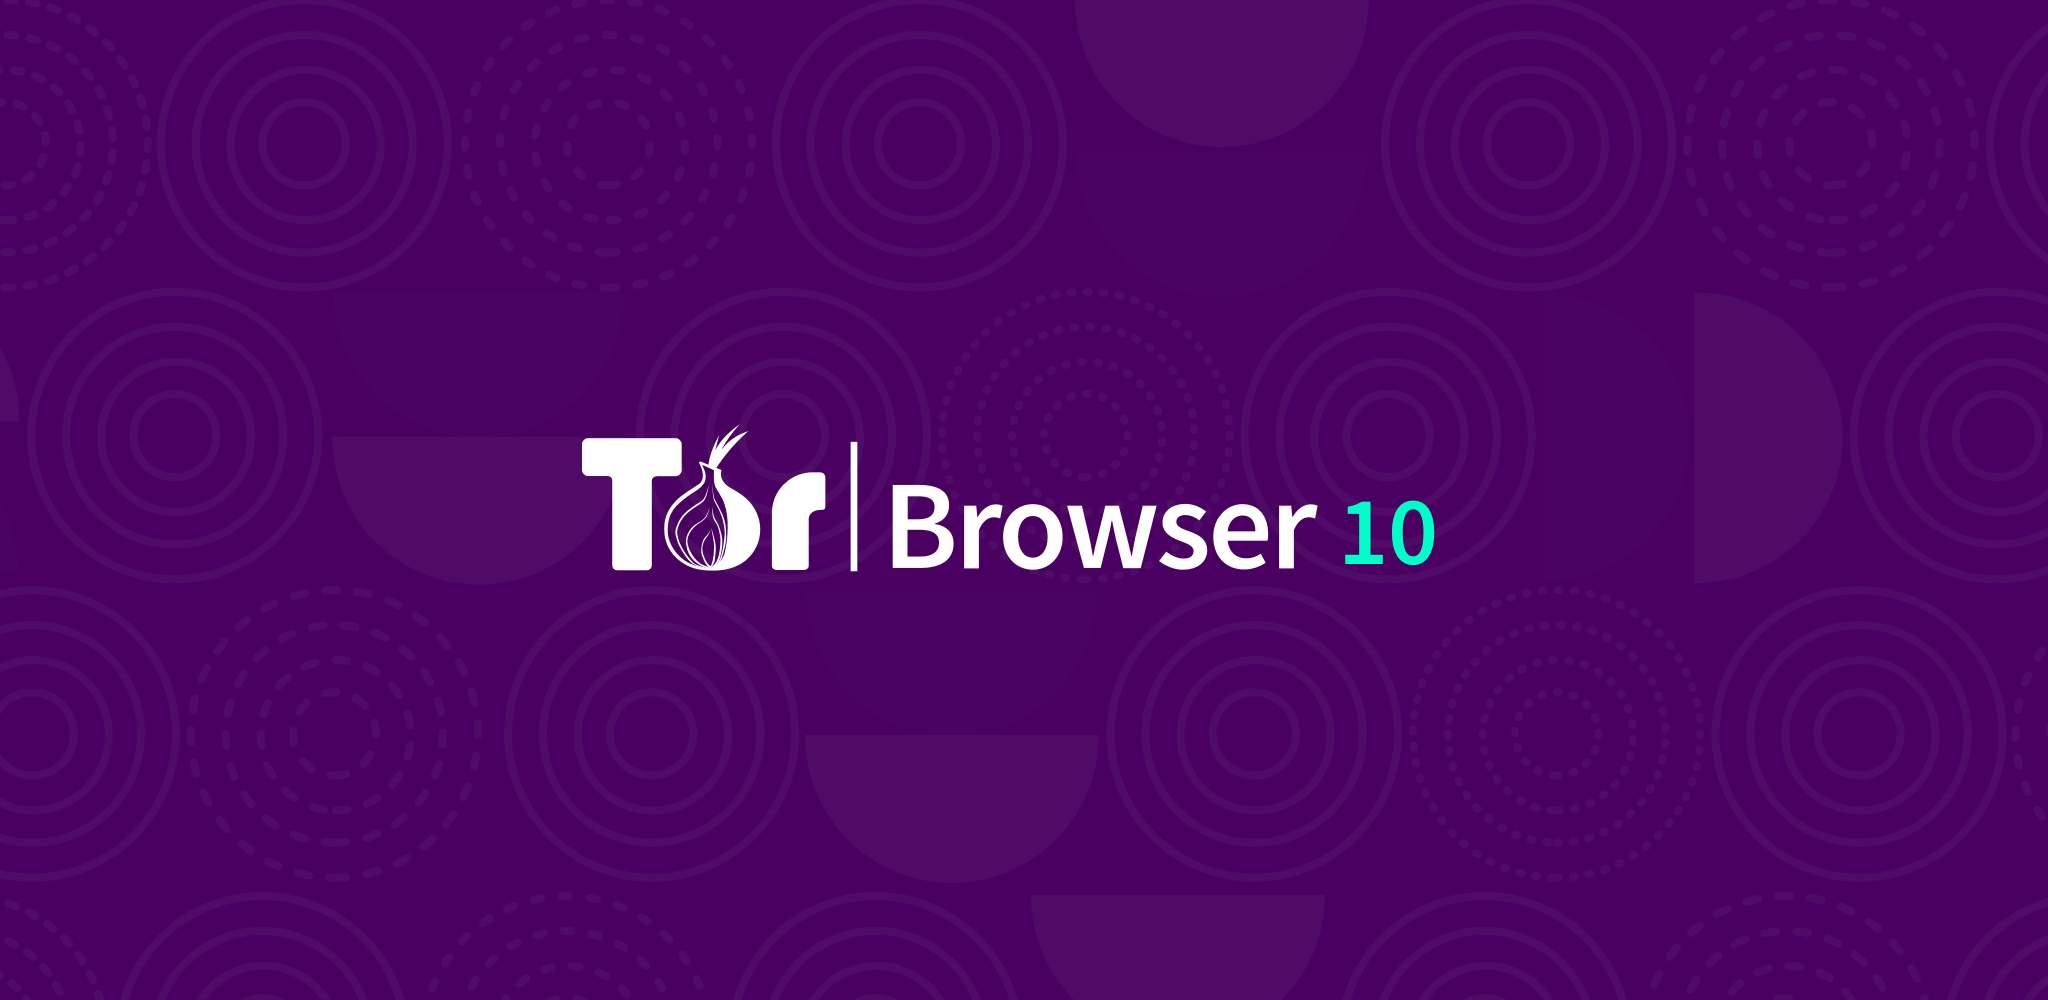 Latest version tor browser мега браузер тор как выбрать страну mega